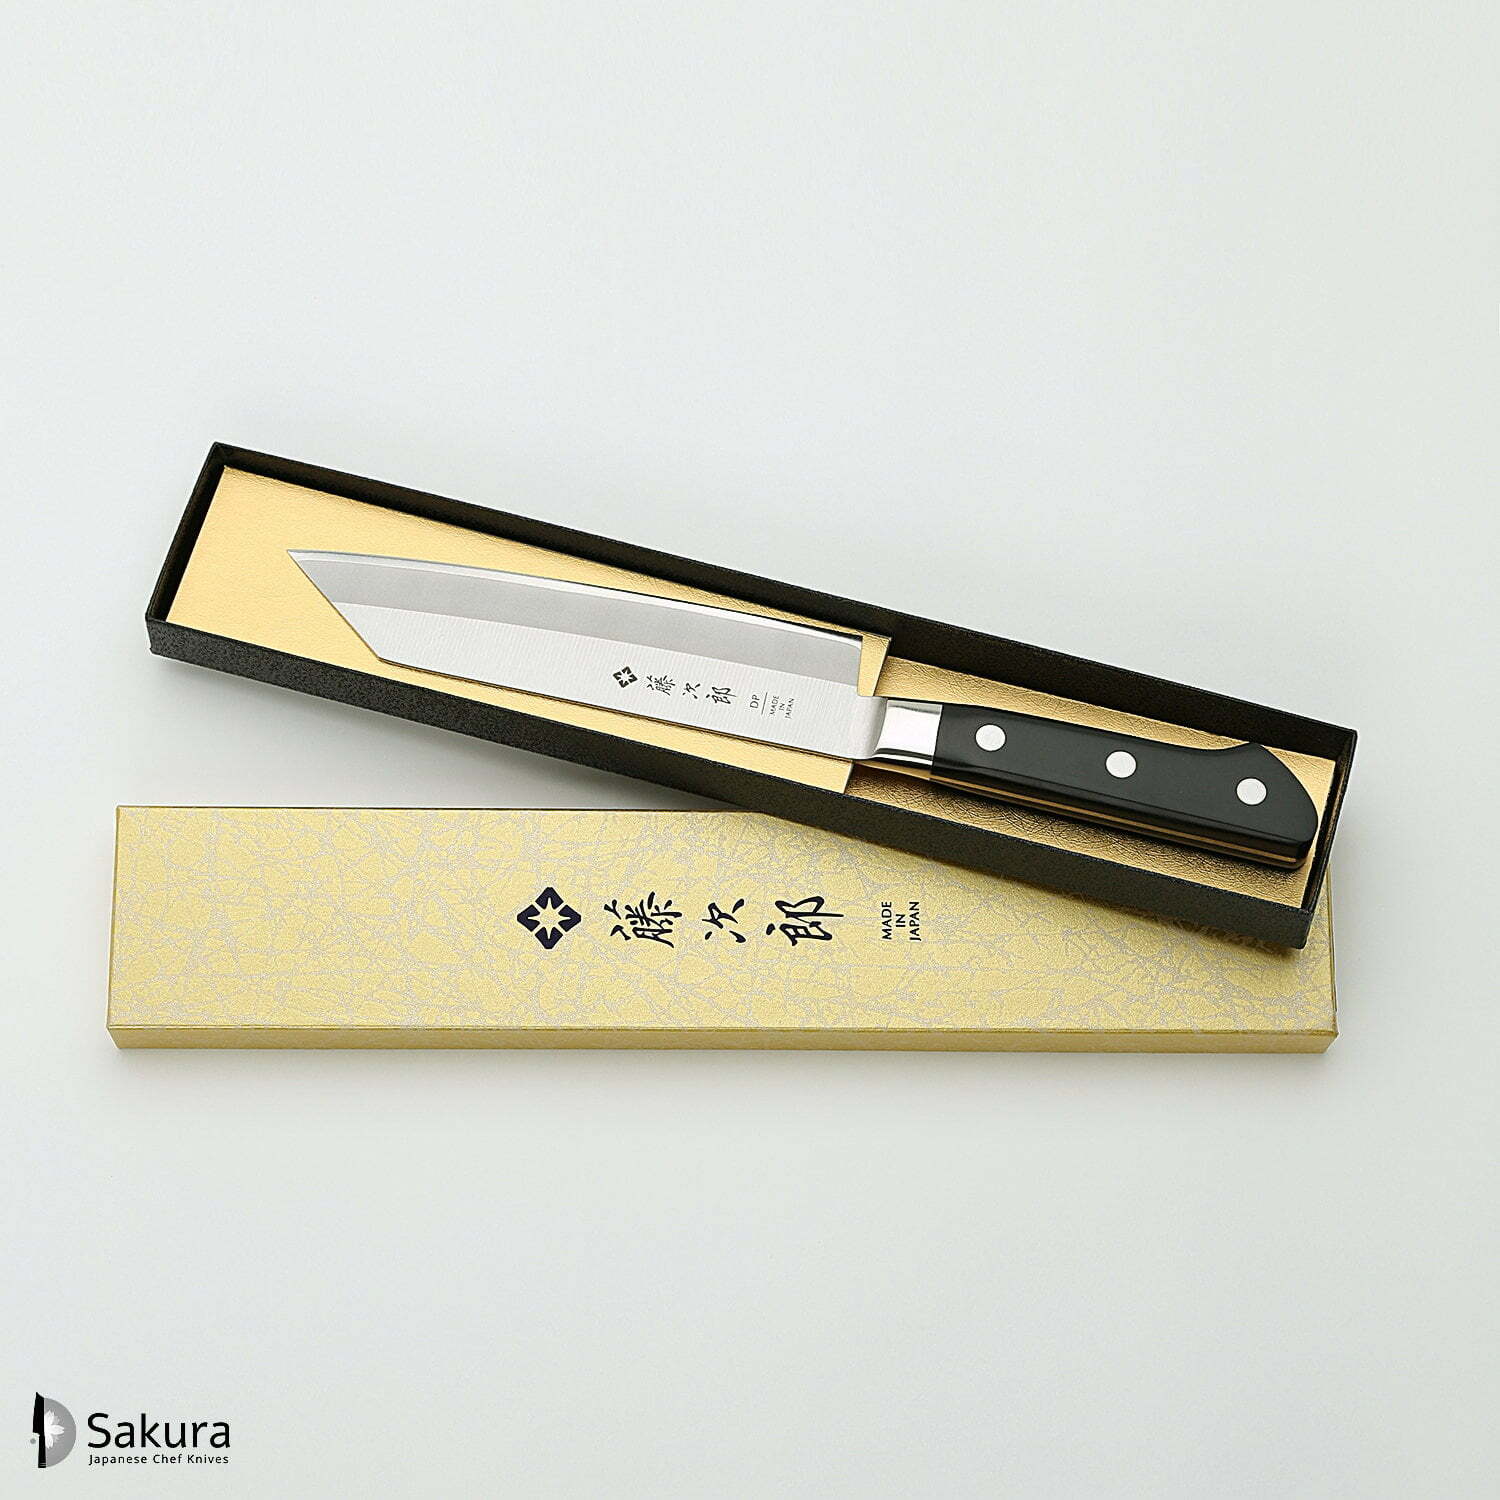 סכין שף רב-תכליתית קִּירִיצוּקֶה 160מ״מ מחוזקת 3 שכבות: פלדת פחמן יפנית VG-10 עטופה פלדת אל-חלד גימור מט מלוטש טוג׳ירו יפן